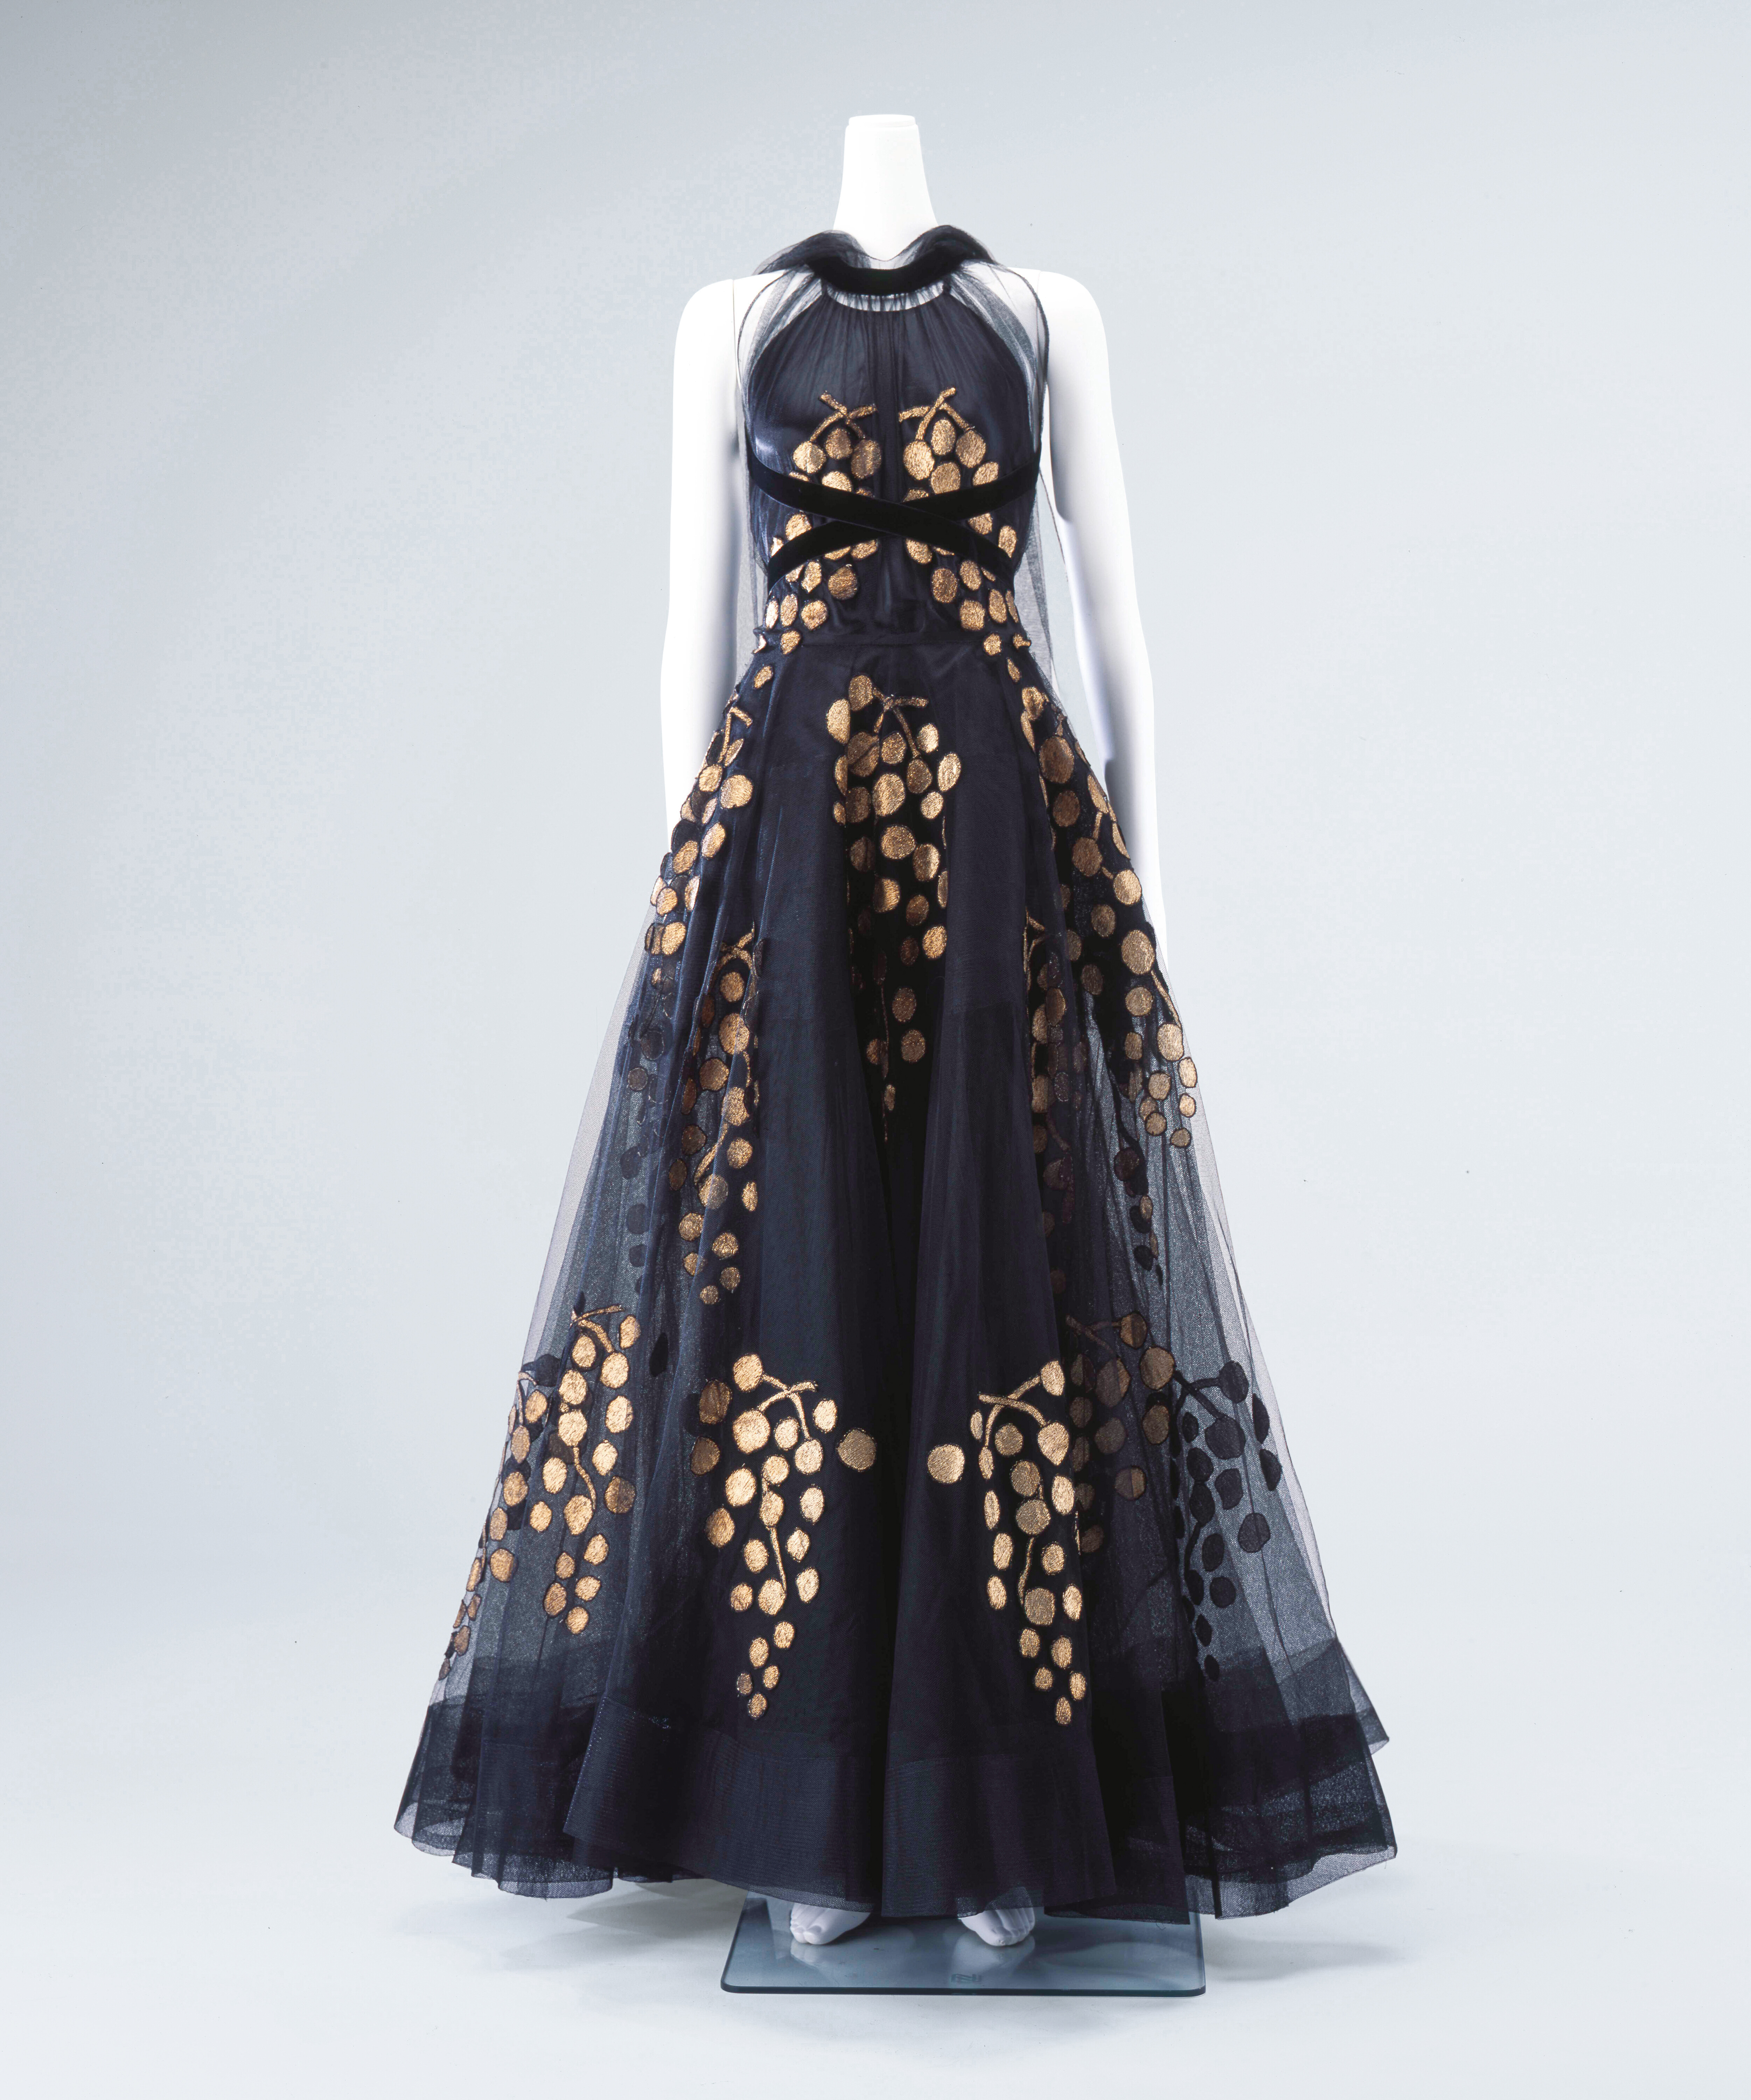 マドレーヌ・ヴィオネ 《イブニング・ドレス》 1938年 島根県立石見美術館